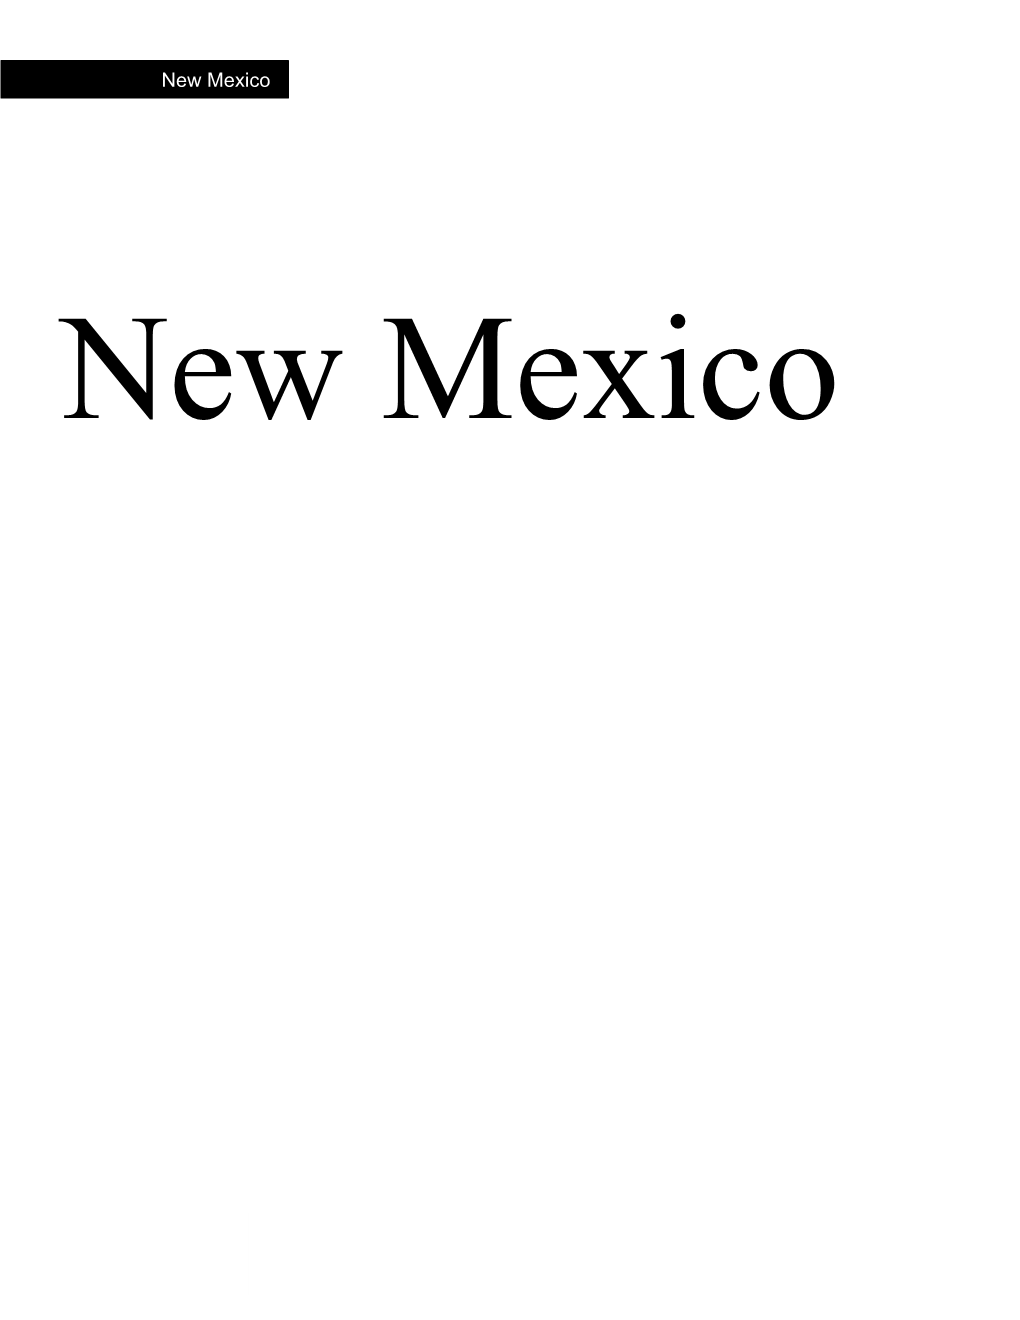 New Mexico 1 New Mexico